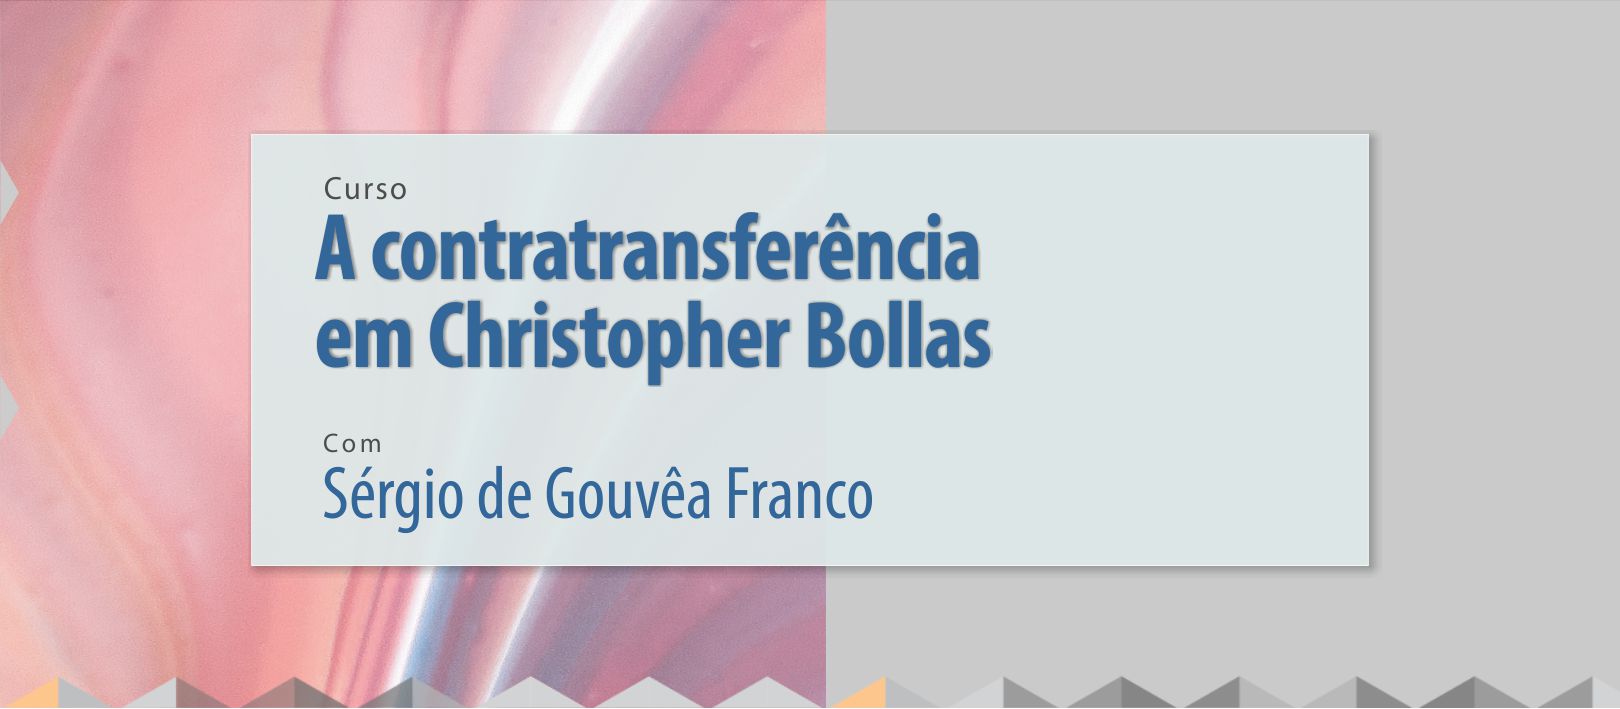 A contratransferência em Christopher Bollas